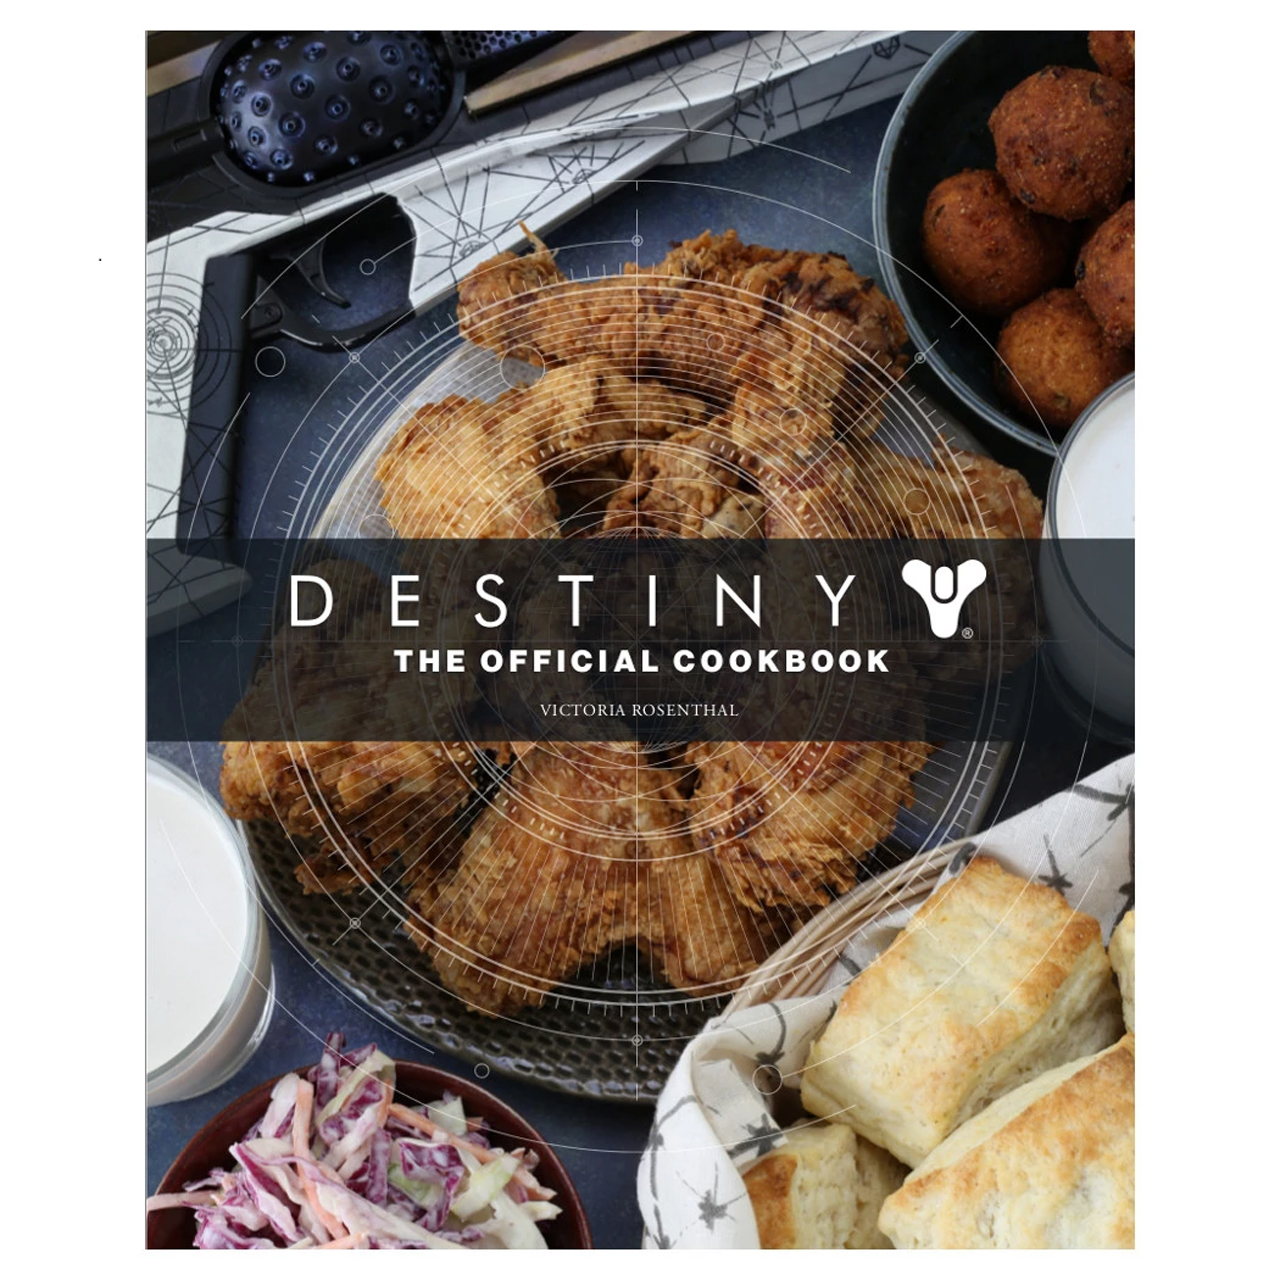 Destiny テーマの料理を紹介する公式レシピ本が海外向けに発表 執筆はゲームの再現料理を手がけるvictoria Rosenthal氏